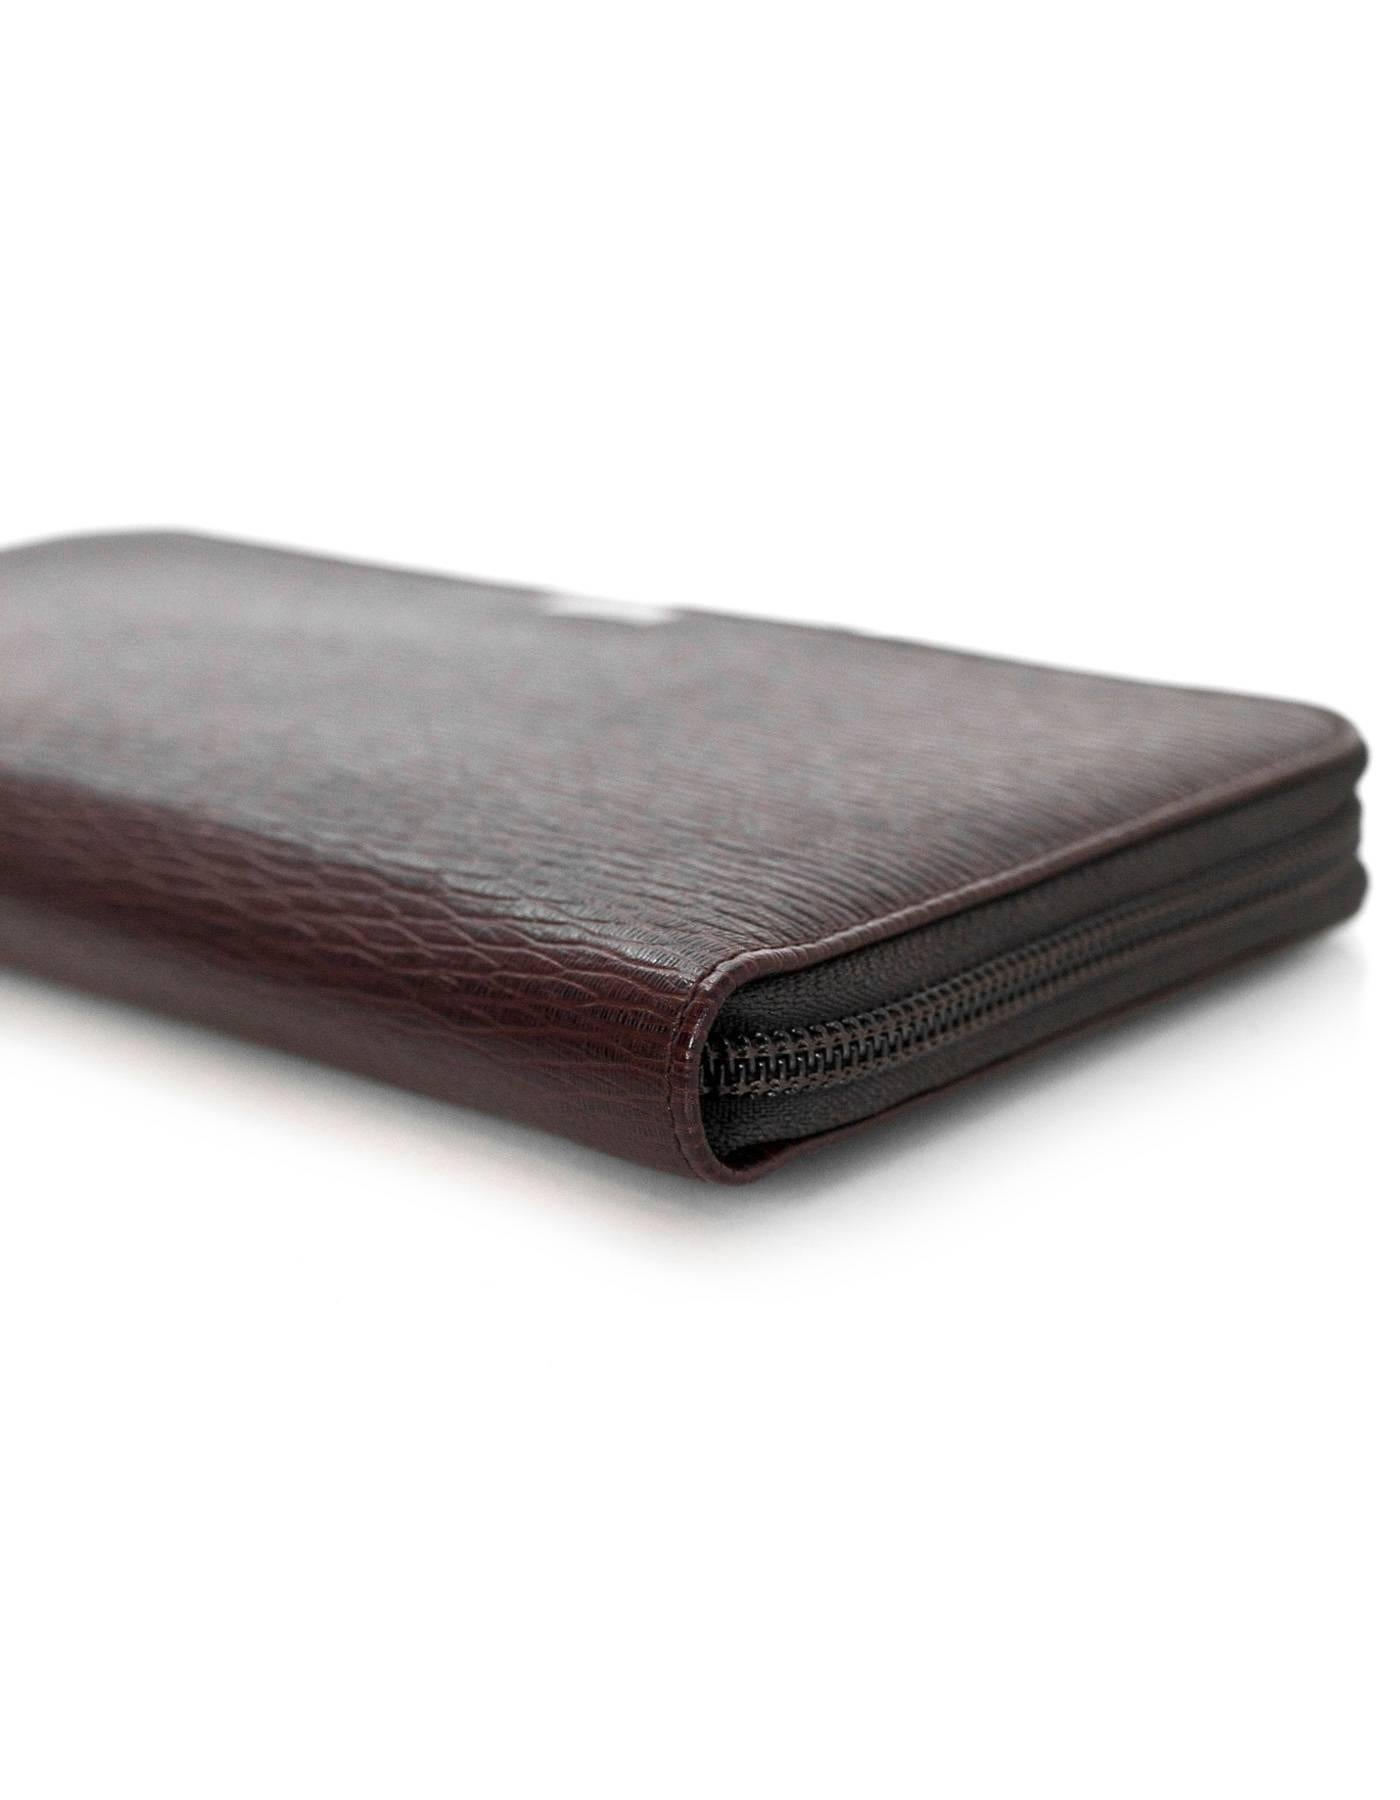 Black Salvatore Ferragamo Brown Leather Zip Around Large Travel Wallet rt. $390